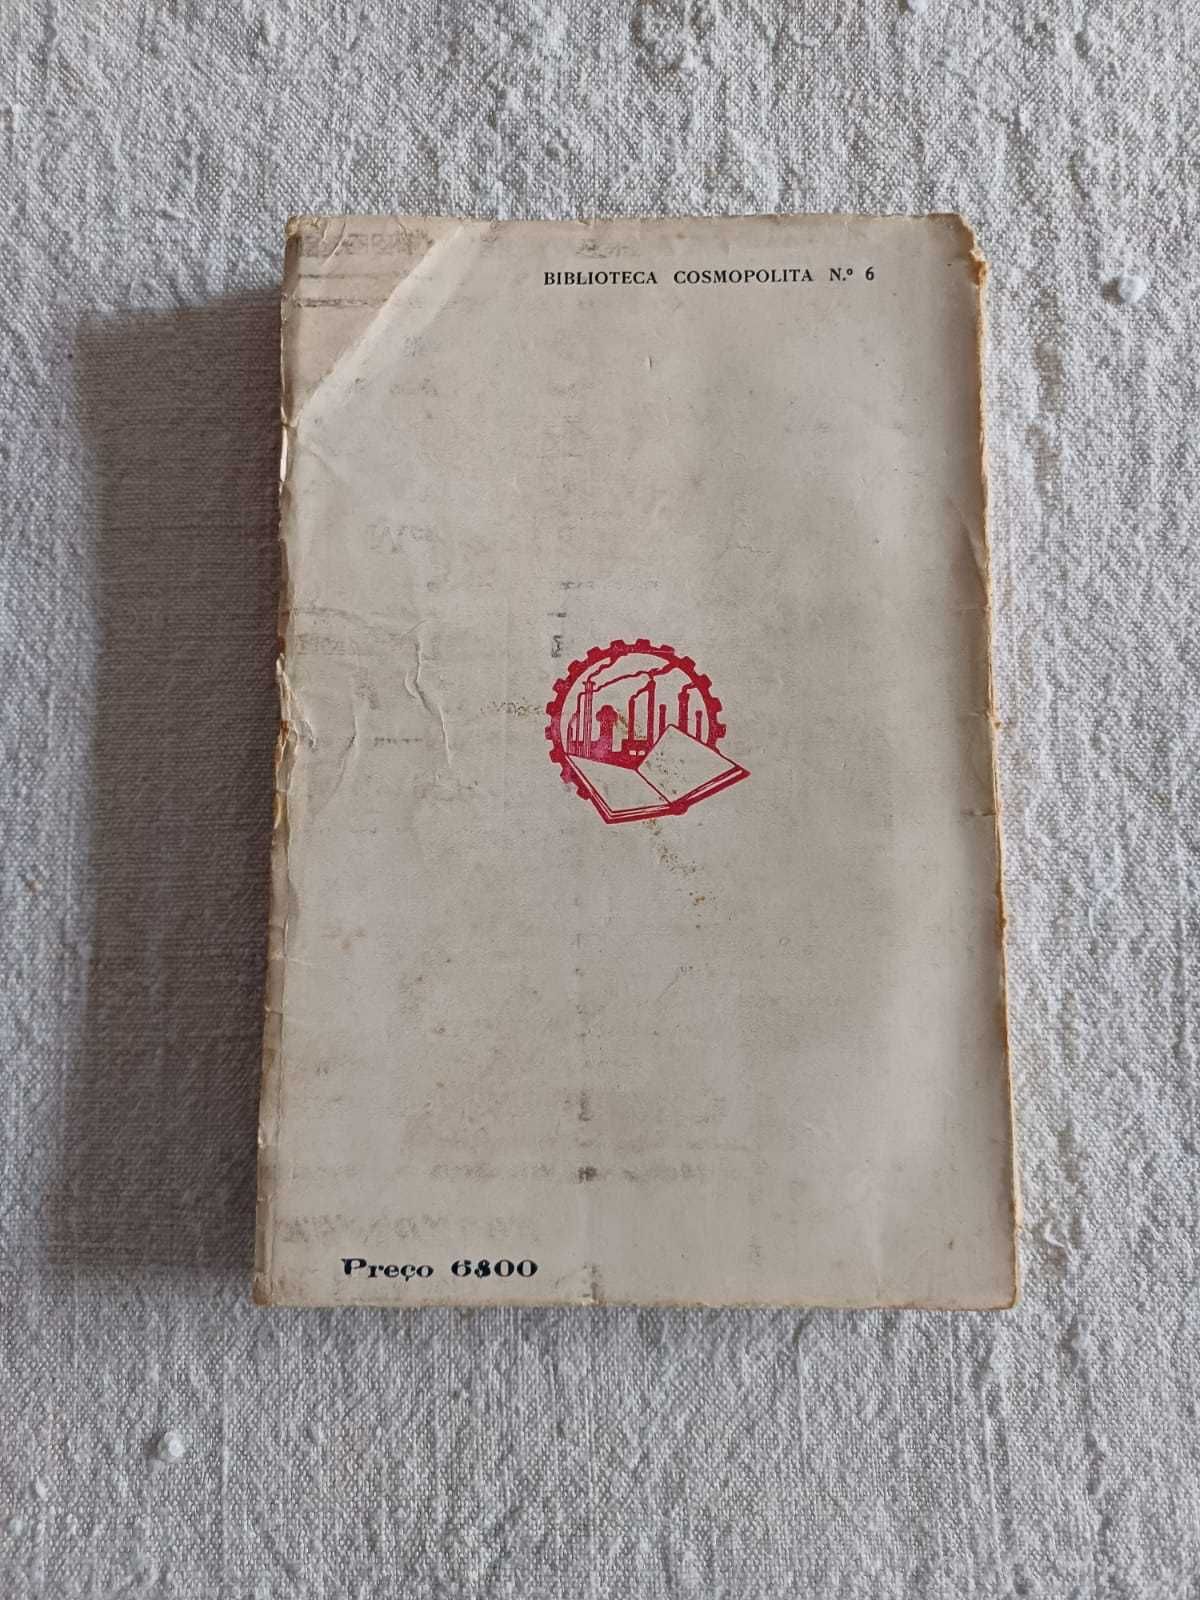 Livro O Estado e a revolução, Lenine, Biblioteca Cosmopolita, ed. 1930